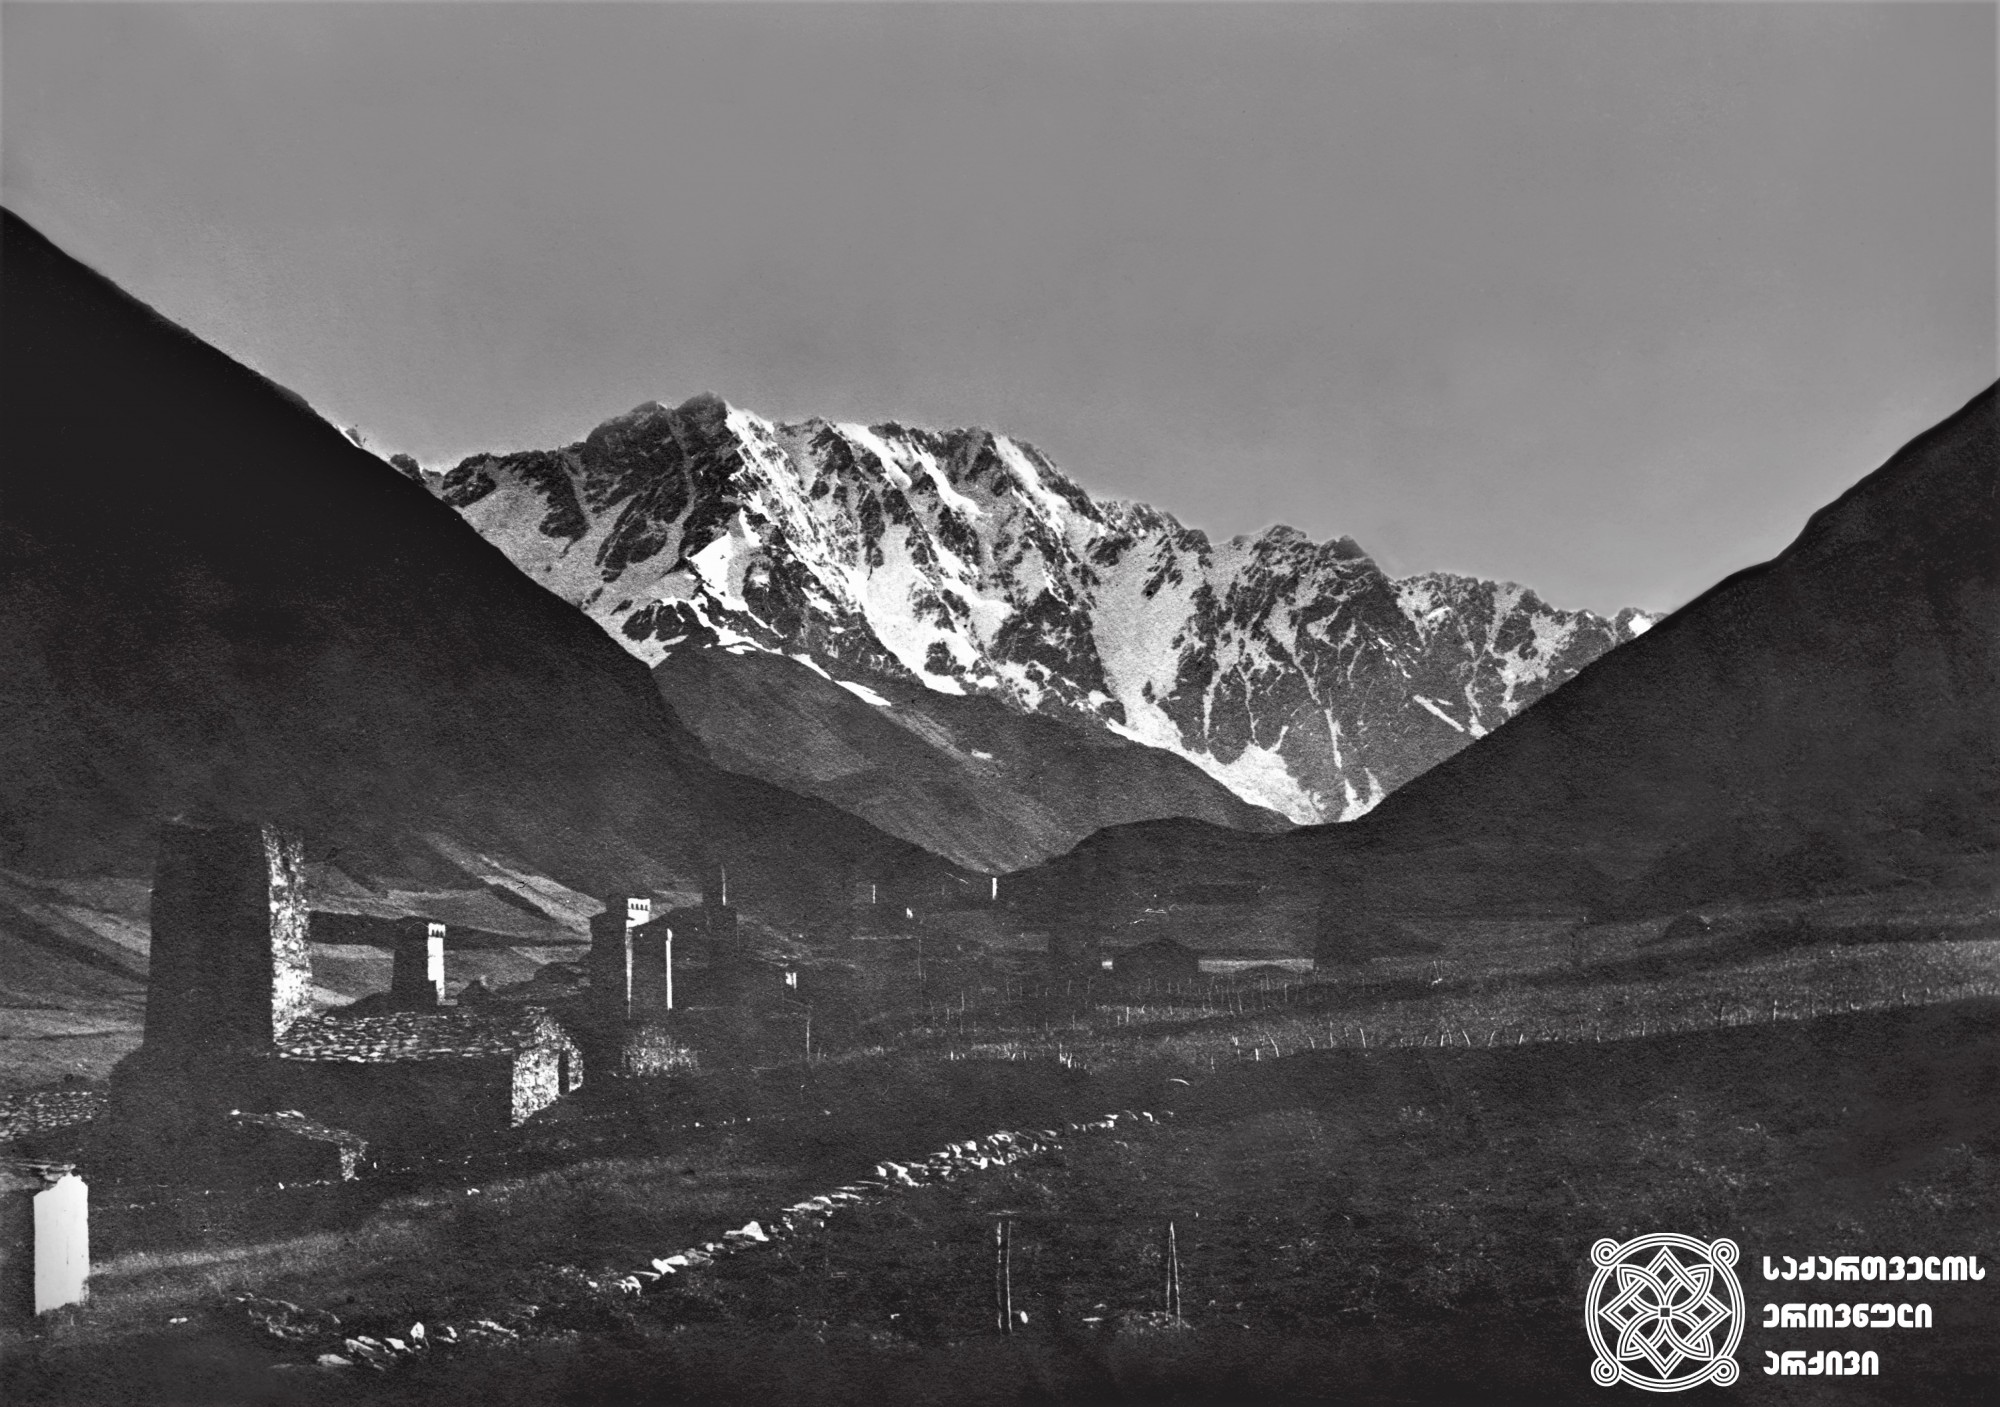 შხარა. <br>
კავკასიონი/ს მთავარი წყალგამყოფი ქედი, ბეზენგის კედელი. <br>
მთავარი მწვერვალის სიმაღლე – 5193 მ. <br>
სამეგრელო-ზემო სვანეთის მხარე, მესტიის მუნიციპალიტეტი. <br>
ფოტოს ავტორი – გიორგი ნიკოლაძე. <br>
1929 წელი. <br>
Shkhara. <br>
The main watershed of the Caucasus Mountains, Bezengi Wall. <br>
Main peak’s elevation – 5193 m. <br>
Samegrelo-Zemo Svaneti Region, Mestia Municipality. <br>
Photo by Giorgi Nikoladze. <br>
1929.